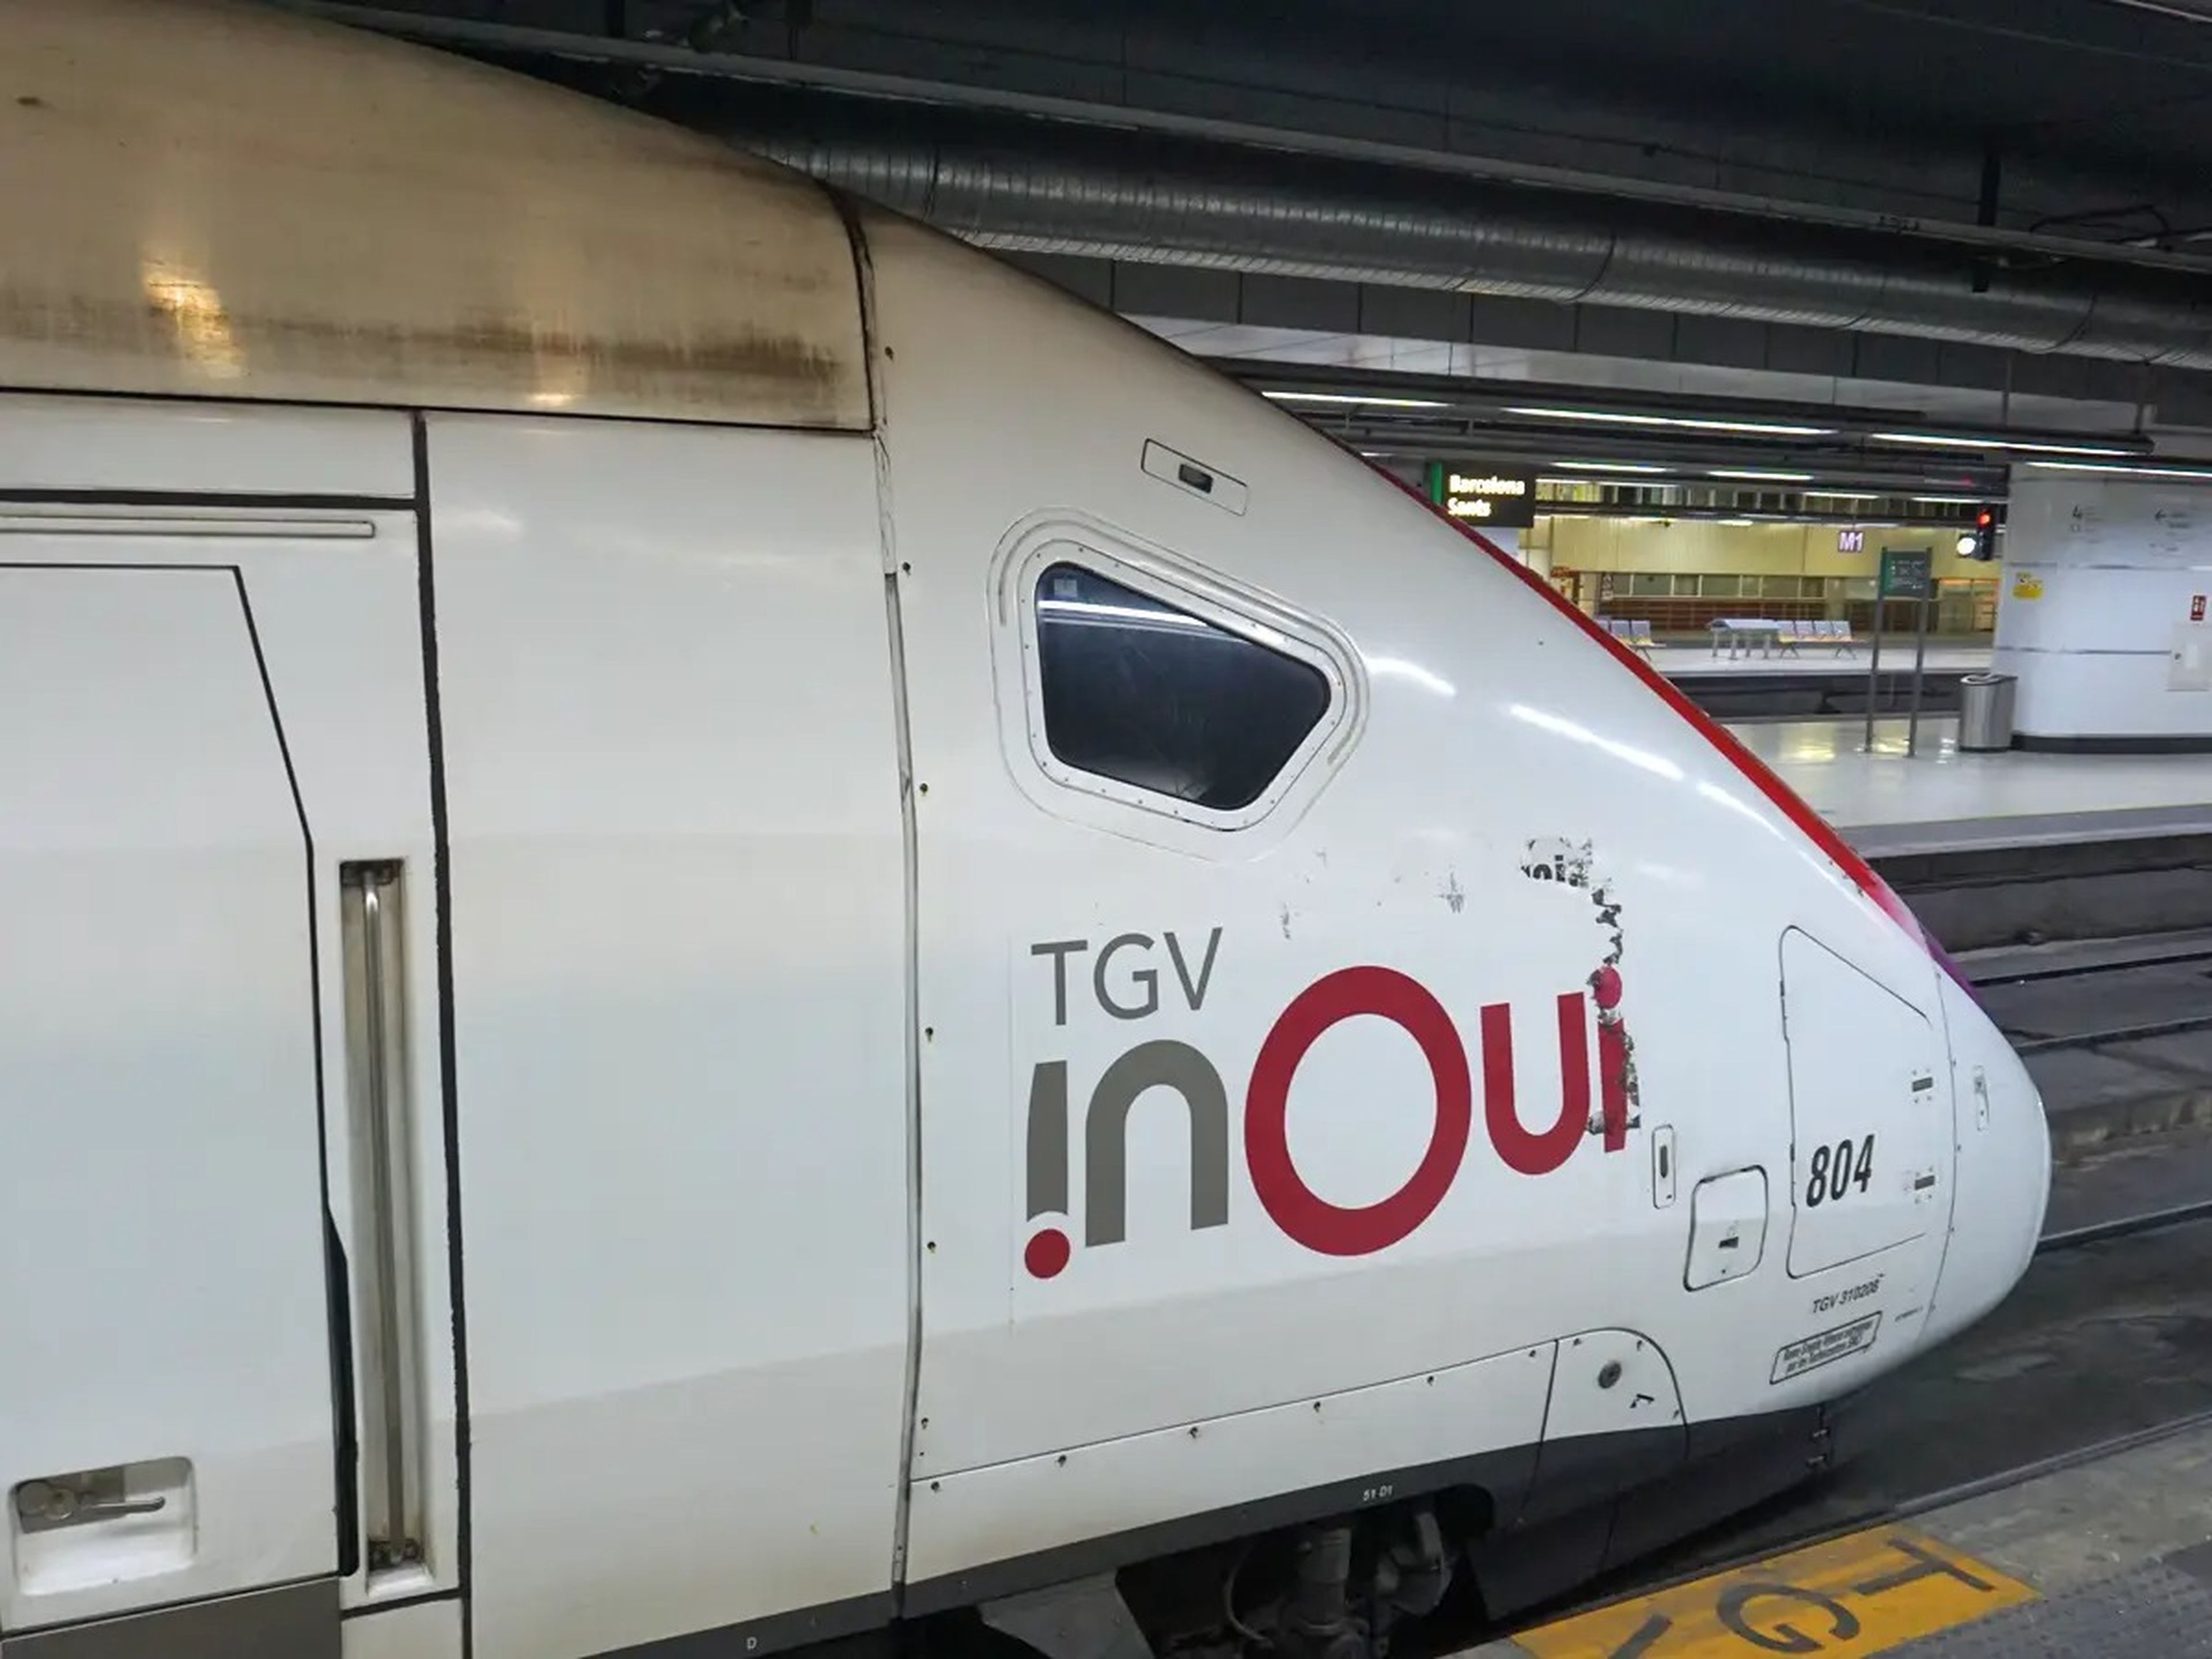 Front of a TGV inOui train.